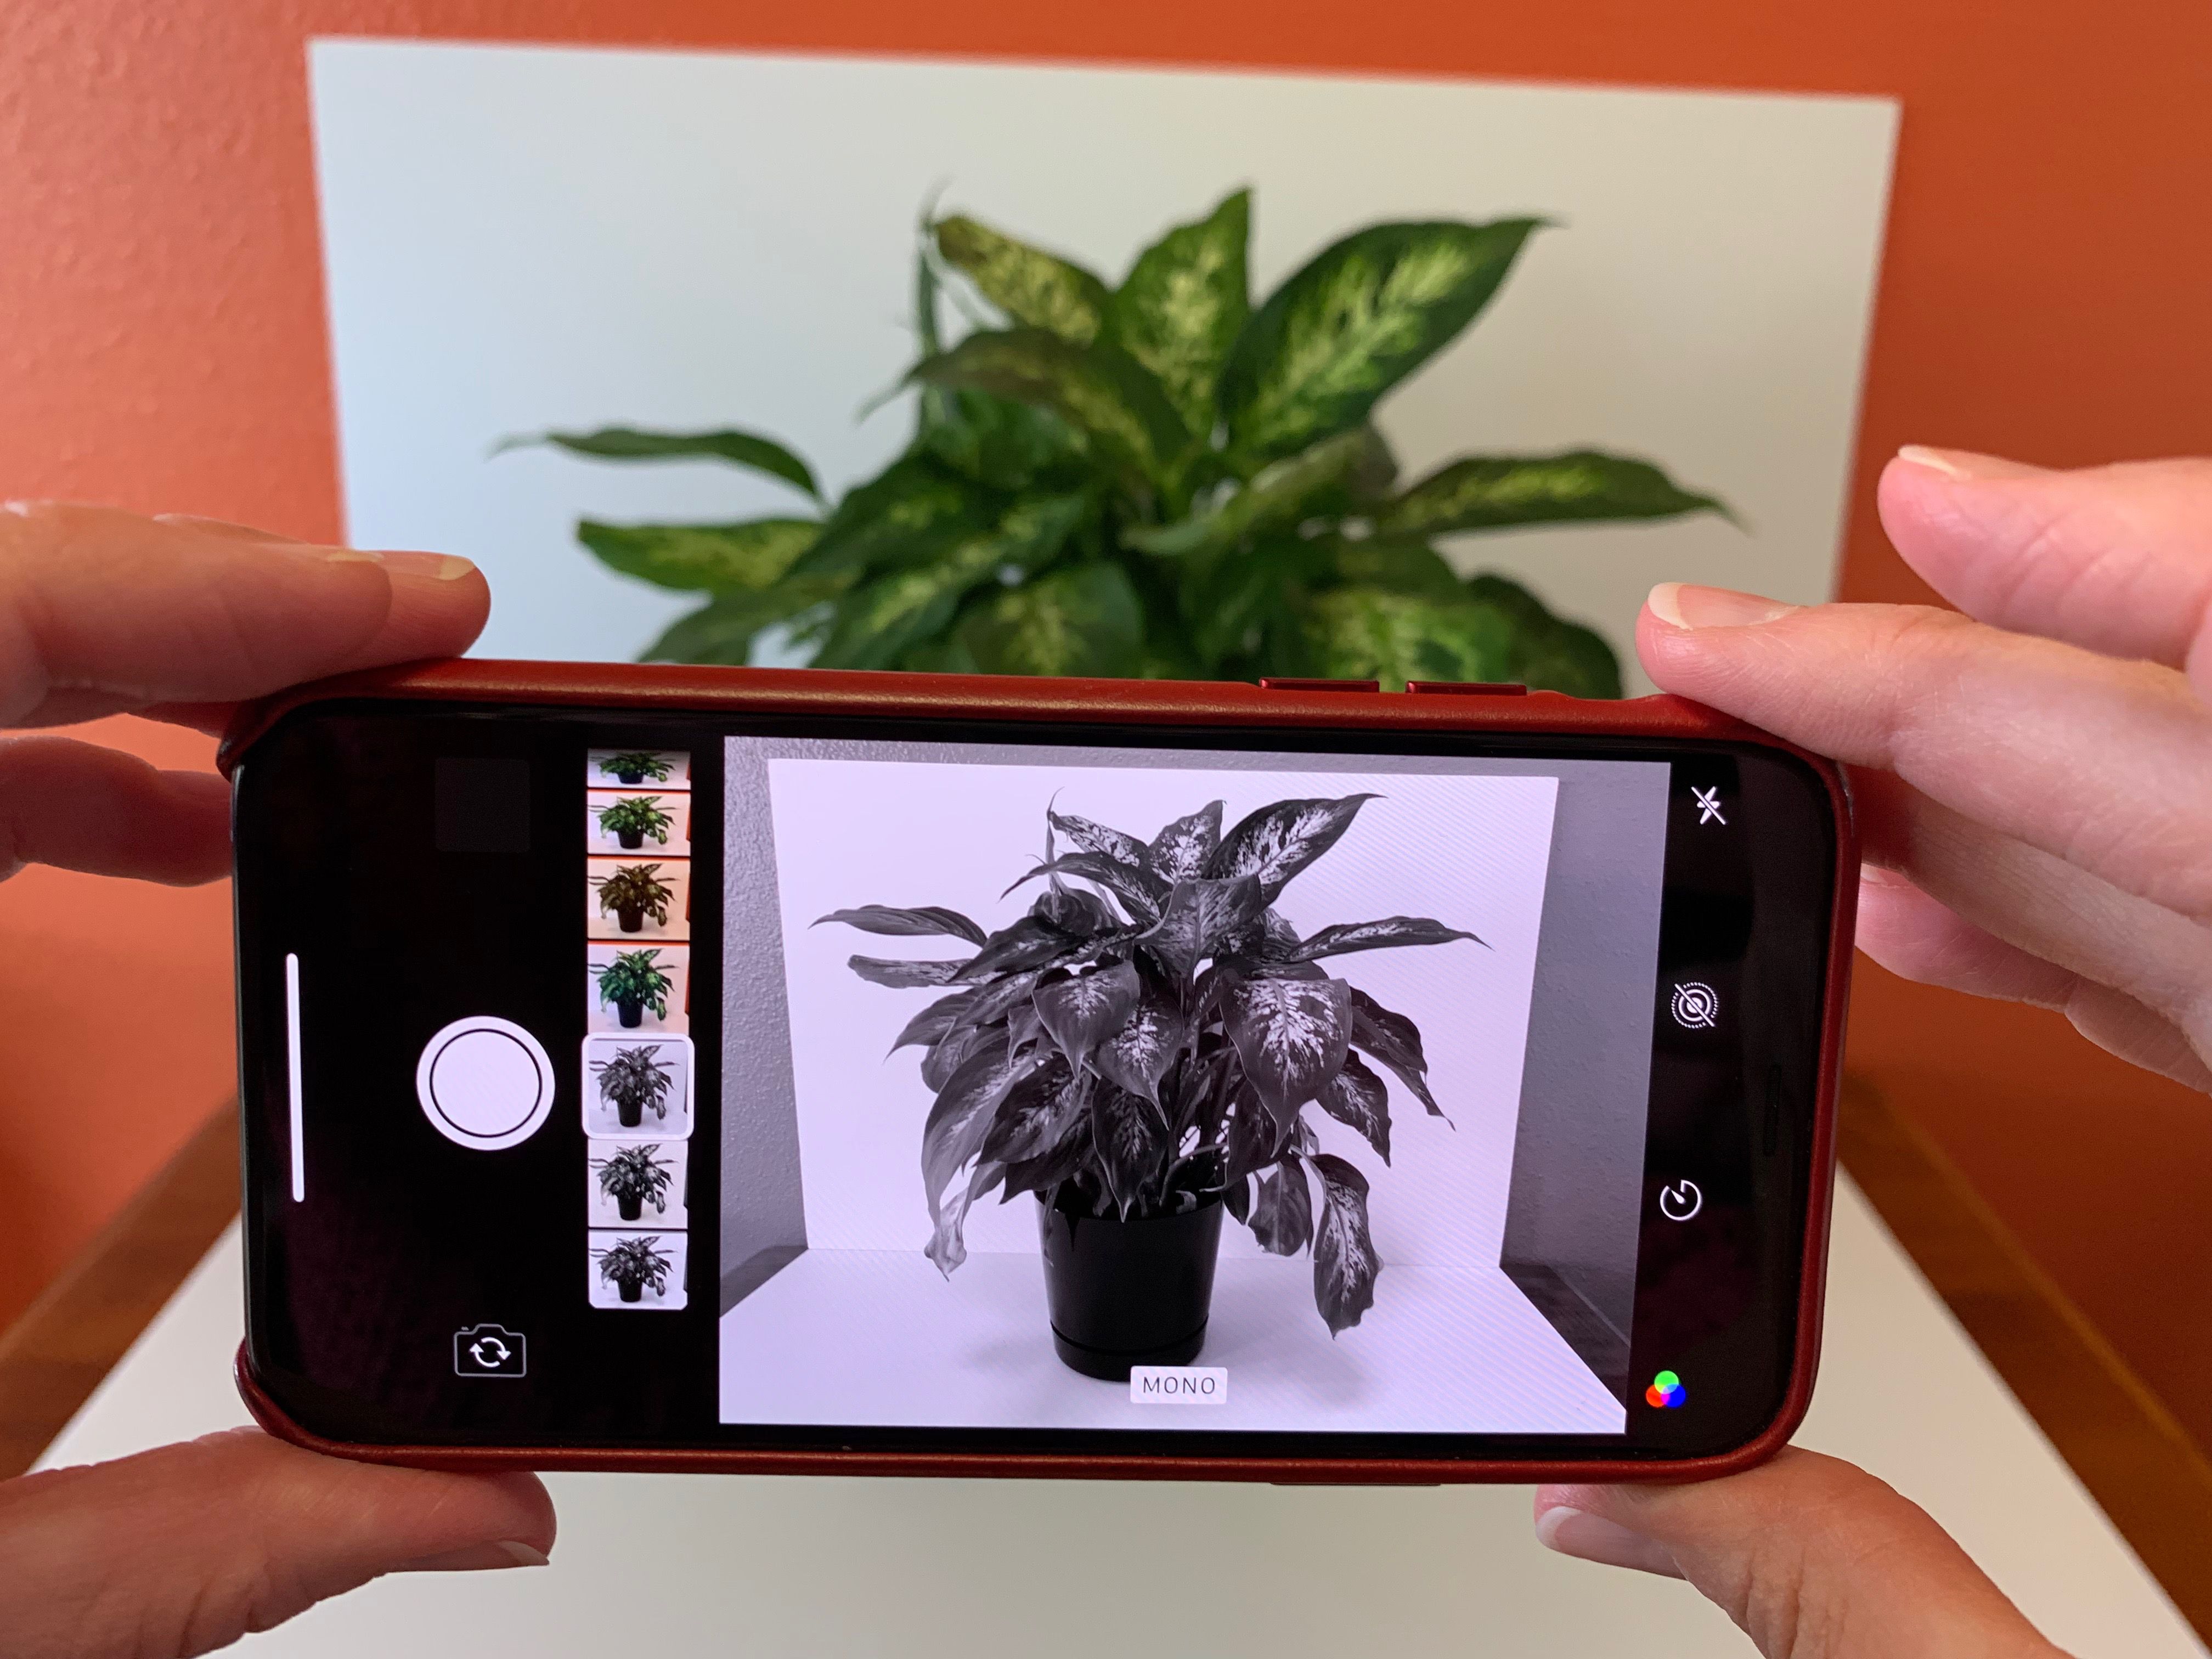 Foto van iPhone met MONO-filter actief, toont onderwerp van een plant in verschillende tinten van wit tot zwart